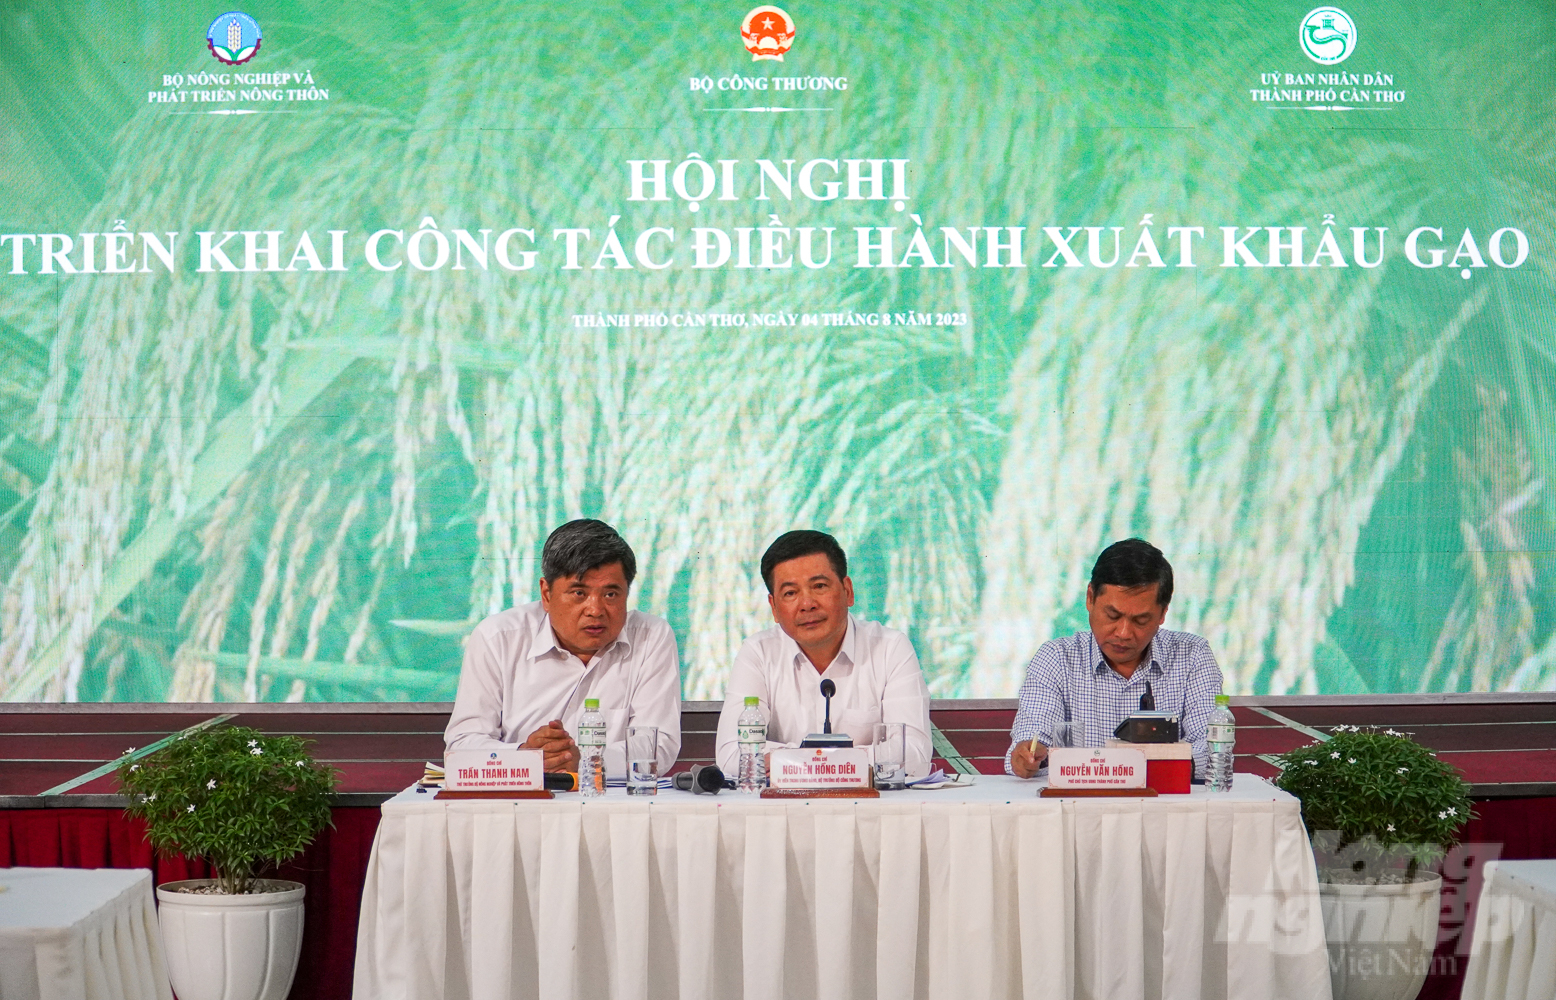 Hội nghị triển khai công tác điều hành xuất khẩu gạo diễn ra ngày 4/8 tại TP Cần Thơ. Ảnh: Kim Anh.